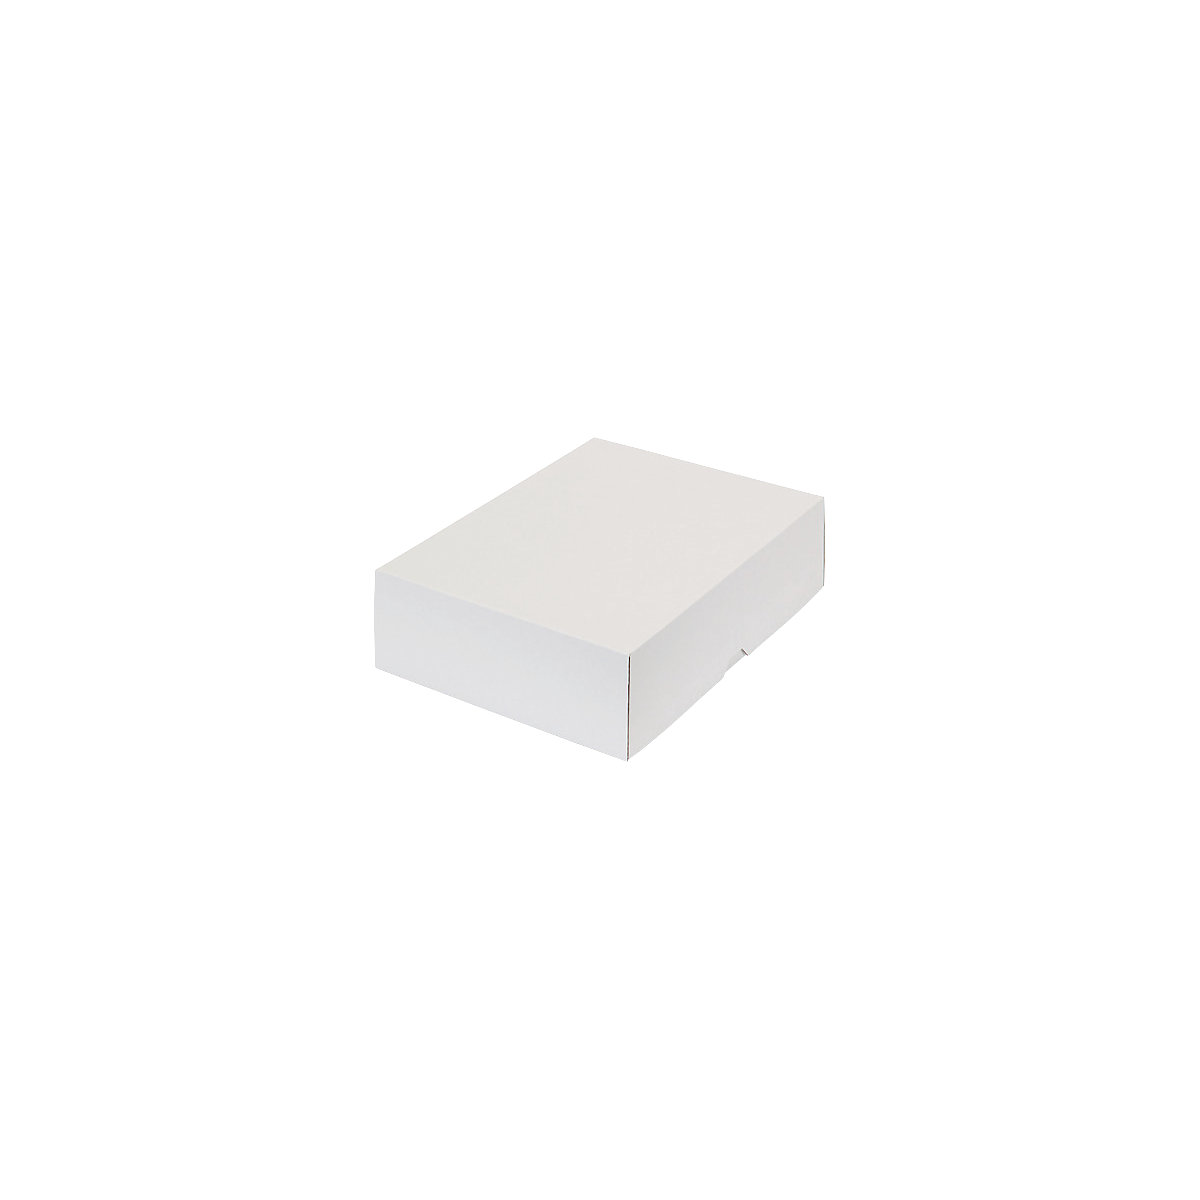 Stülpdeckelkarton, zweiteilig, Innenmaße 302 x 213 x 80 mm, A4, weiß, ab 20 Stk-41